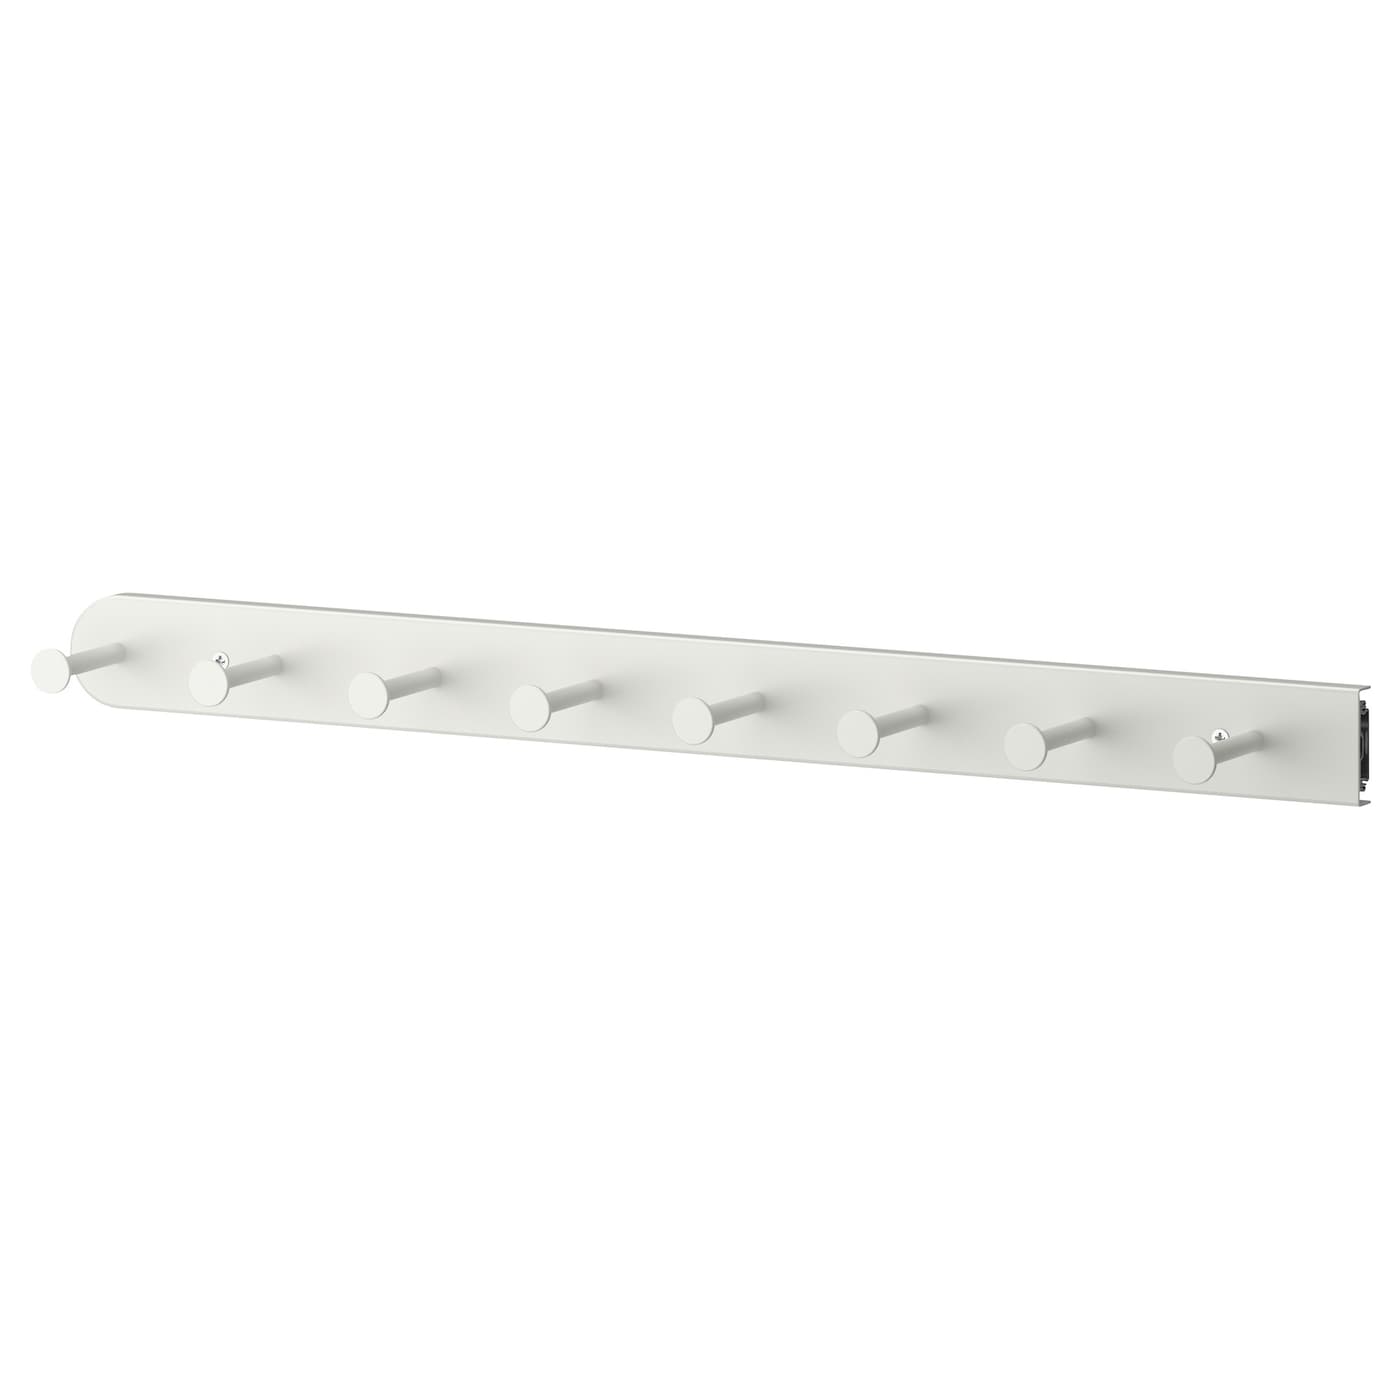 Выдвижная многофункциональная вешалка - IKEA KOMPLEMENT/ КОМПЛИМЕНТ ИКЕА, 58 см, белый